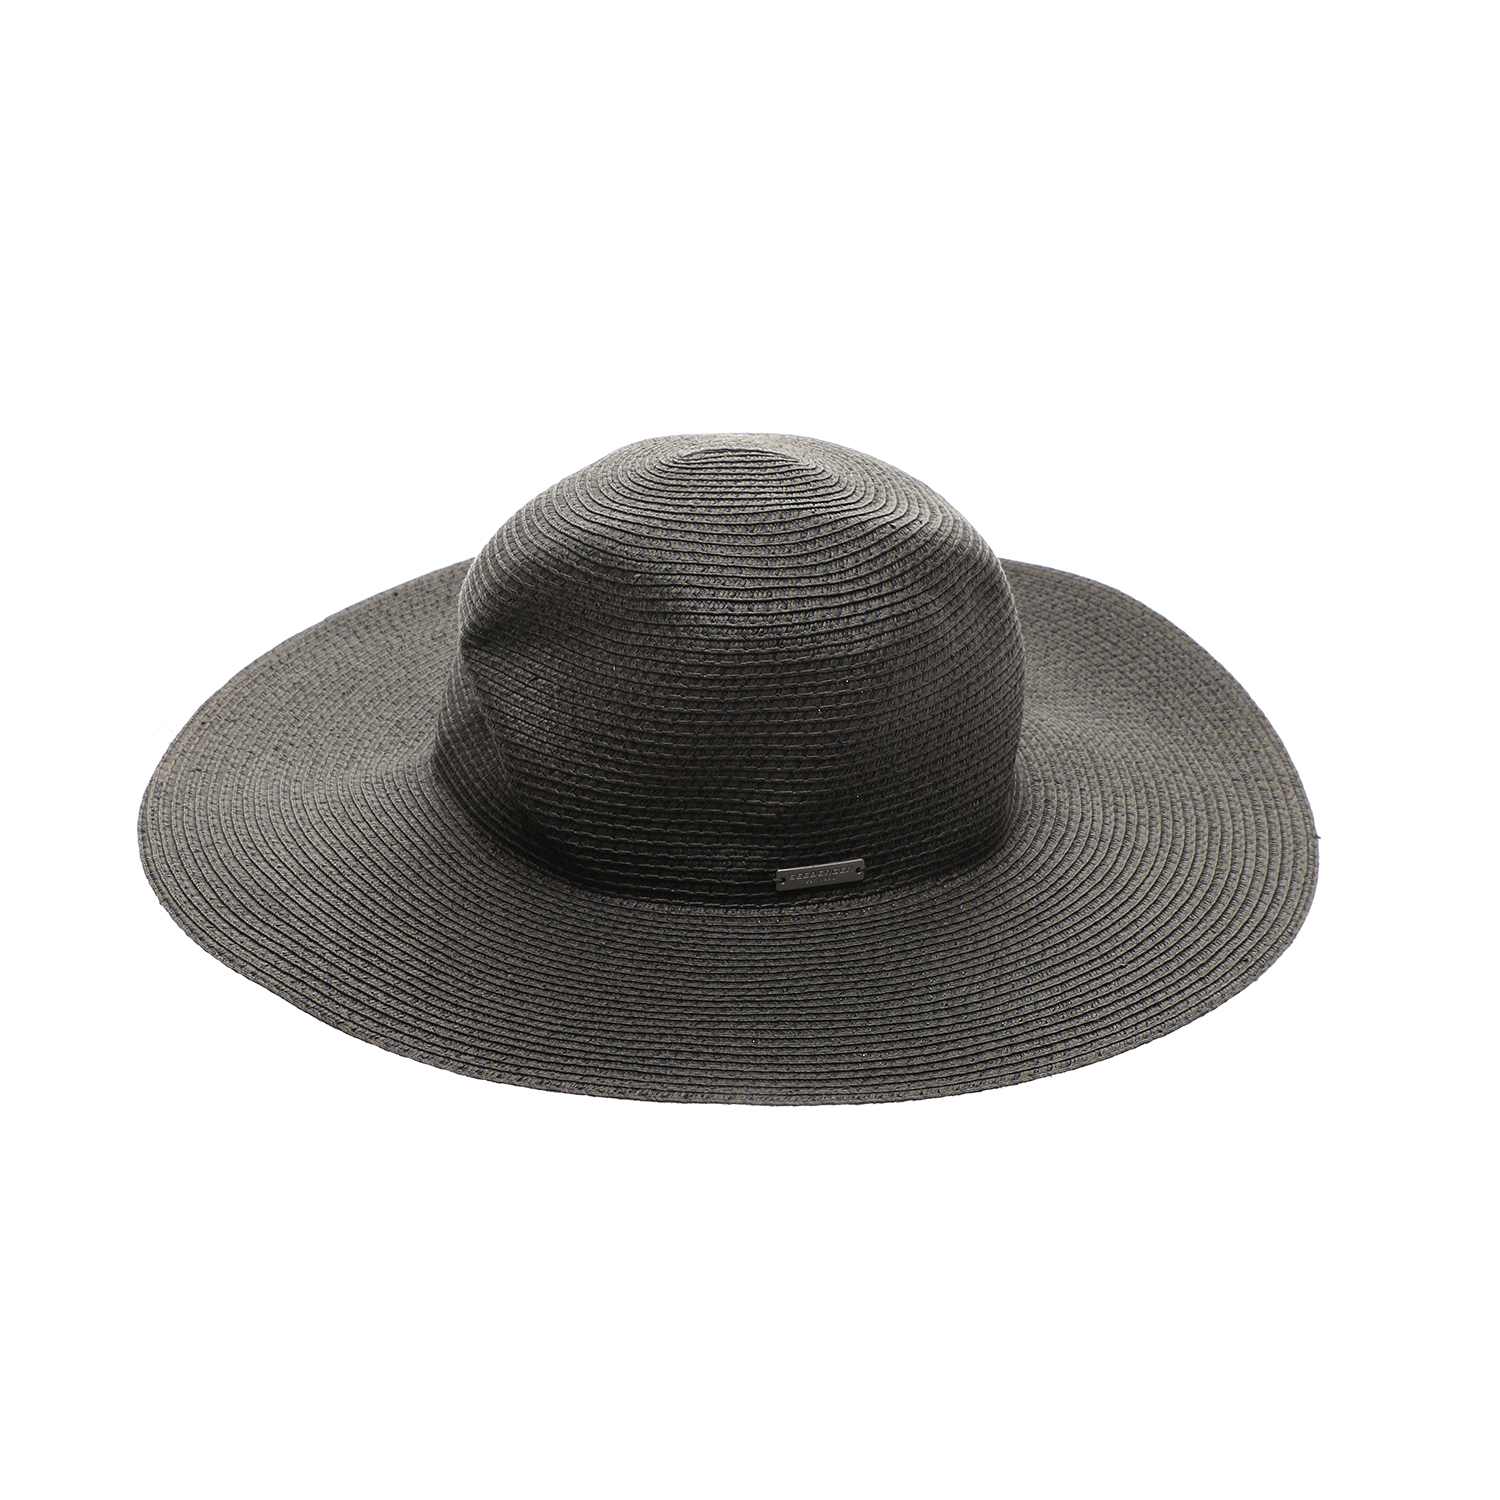 Γυναικεία/Αξεσουάρ/Καπέλα/Casual SEEBERGER - Γυναικείο ψάθινο καπέλο SEEBERGER FLOPPY UV-protection μαύρο